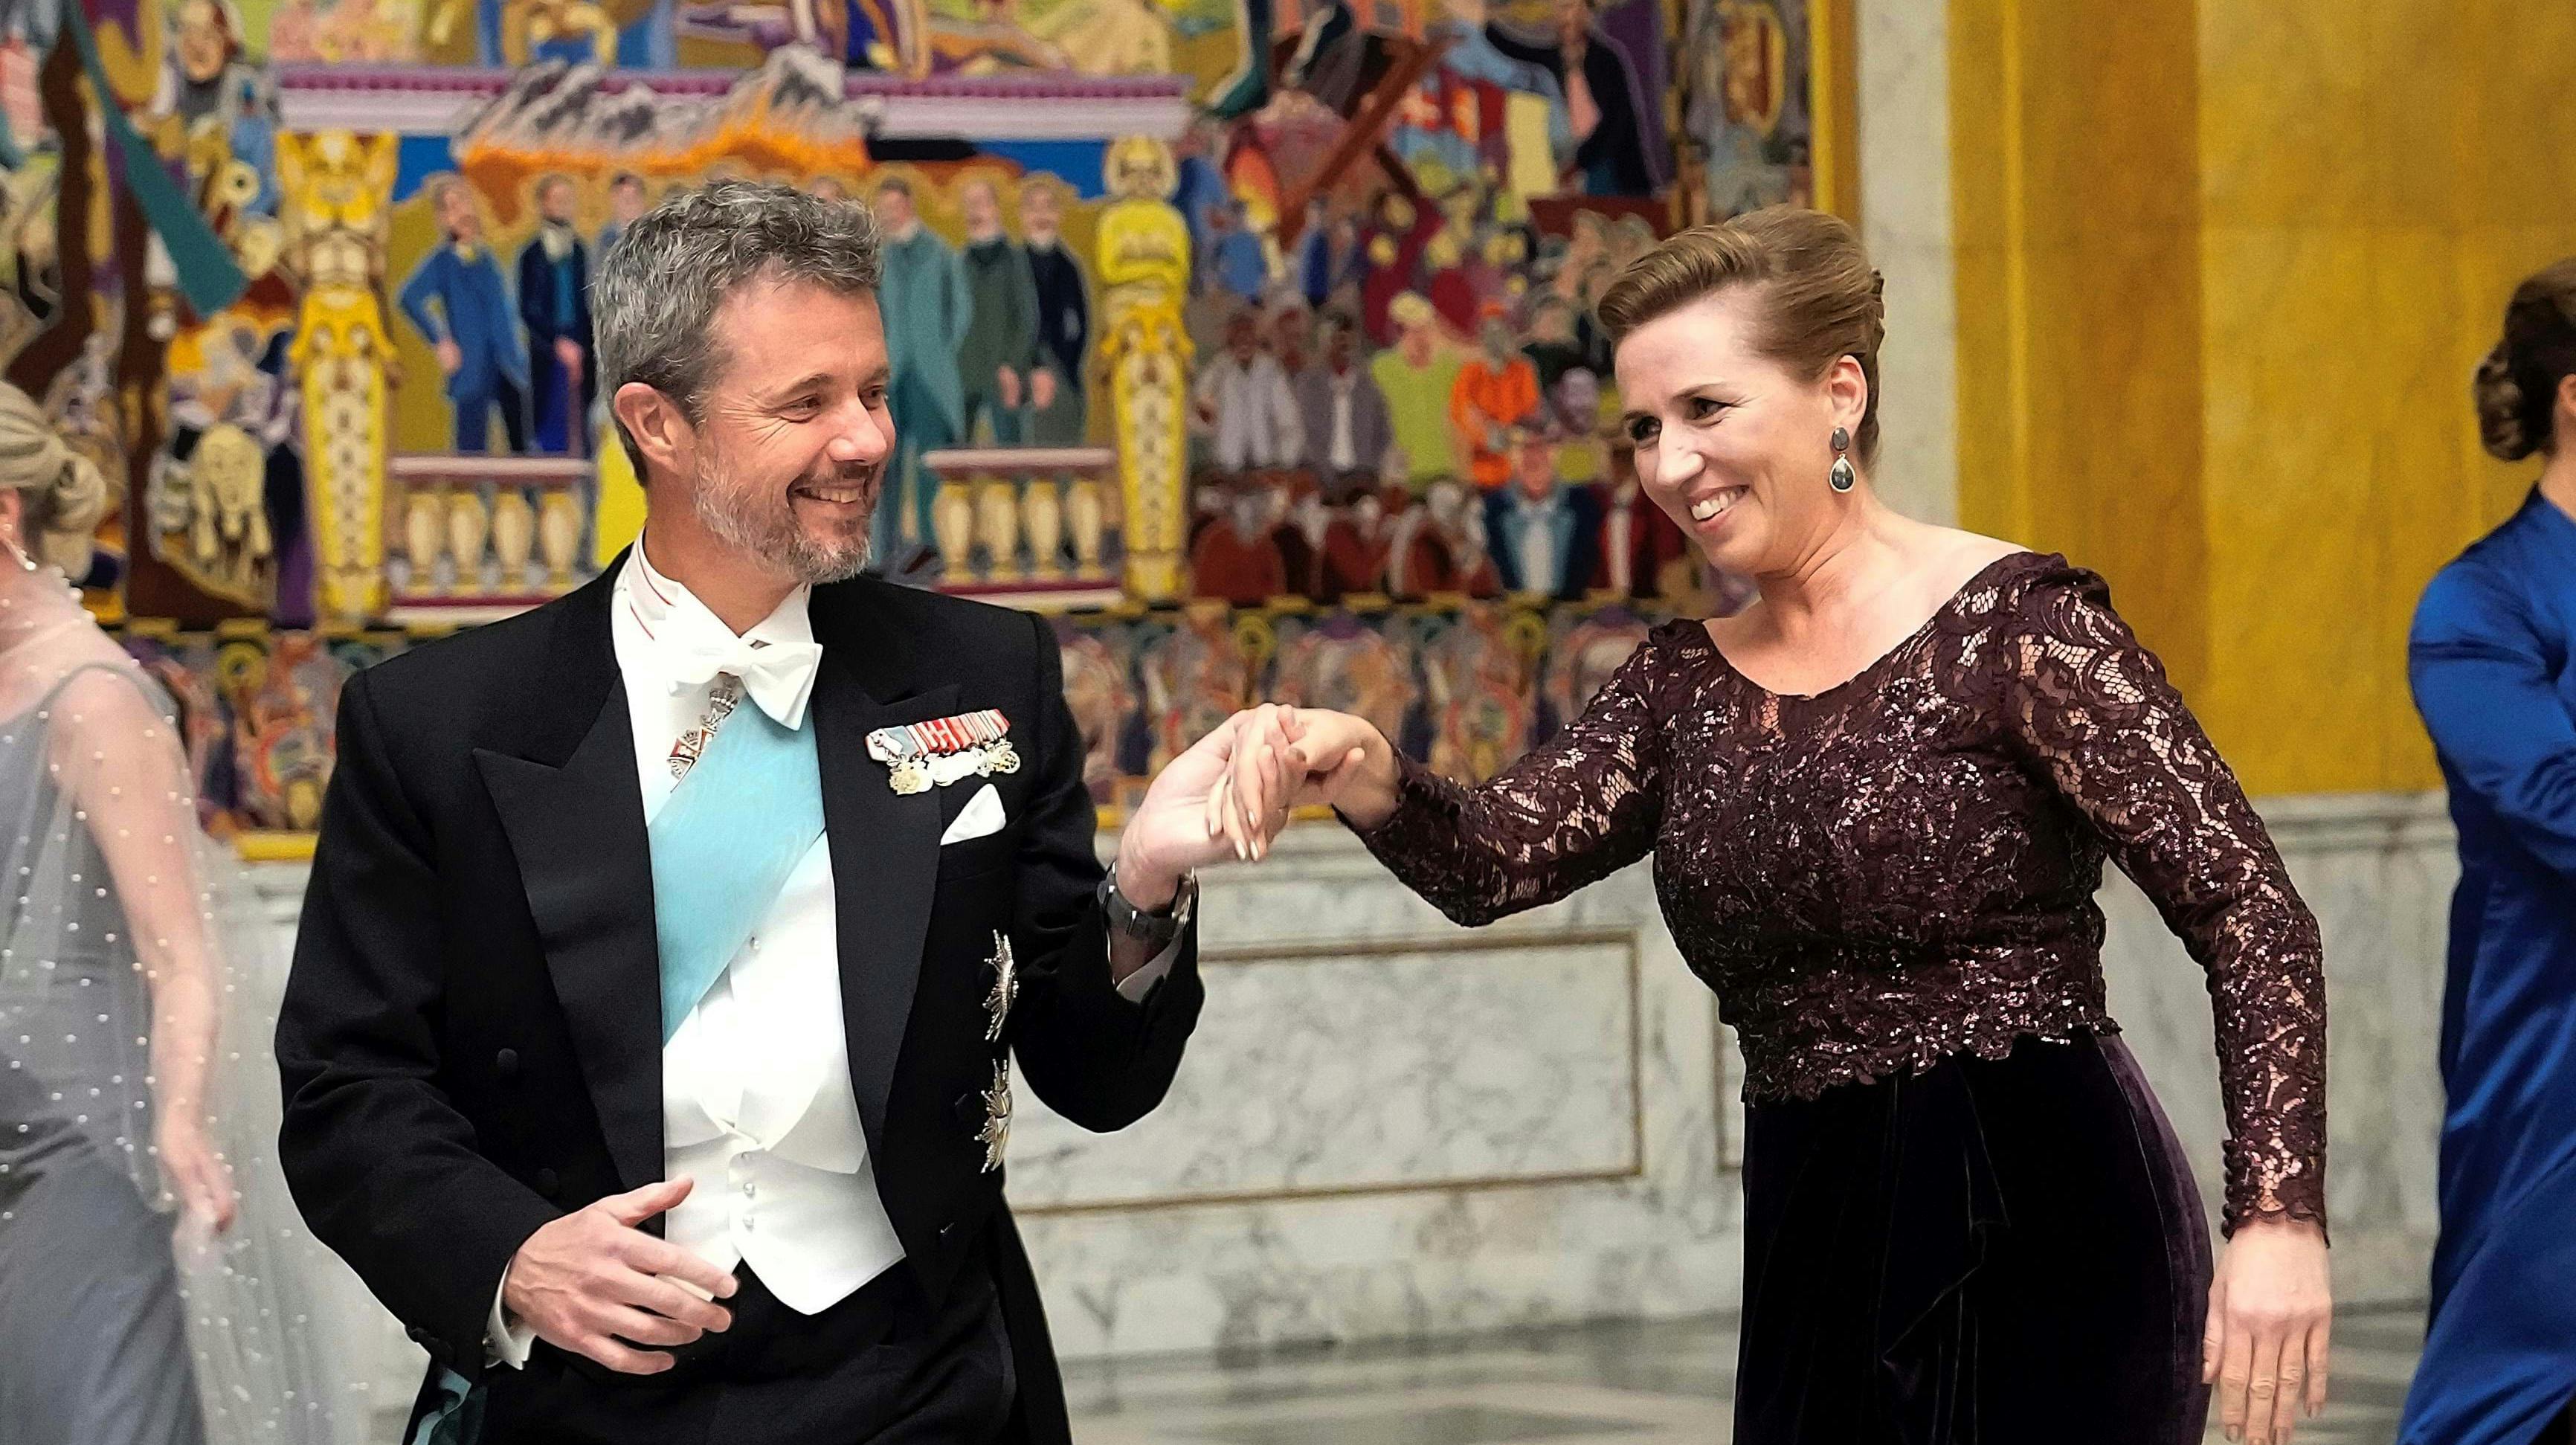 Frederik er kongen af dansegulvet. Her med Mette Frederiksen til fejring af dronningens 50-års jubilæum tilbage i september.